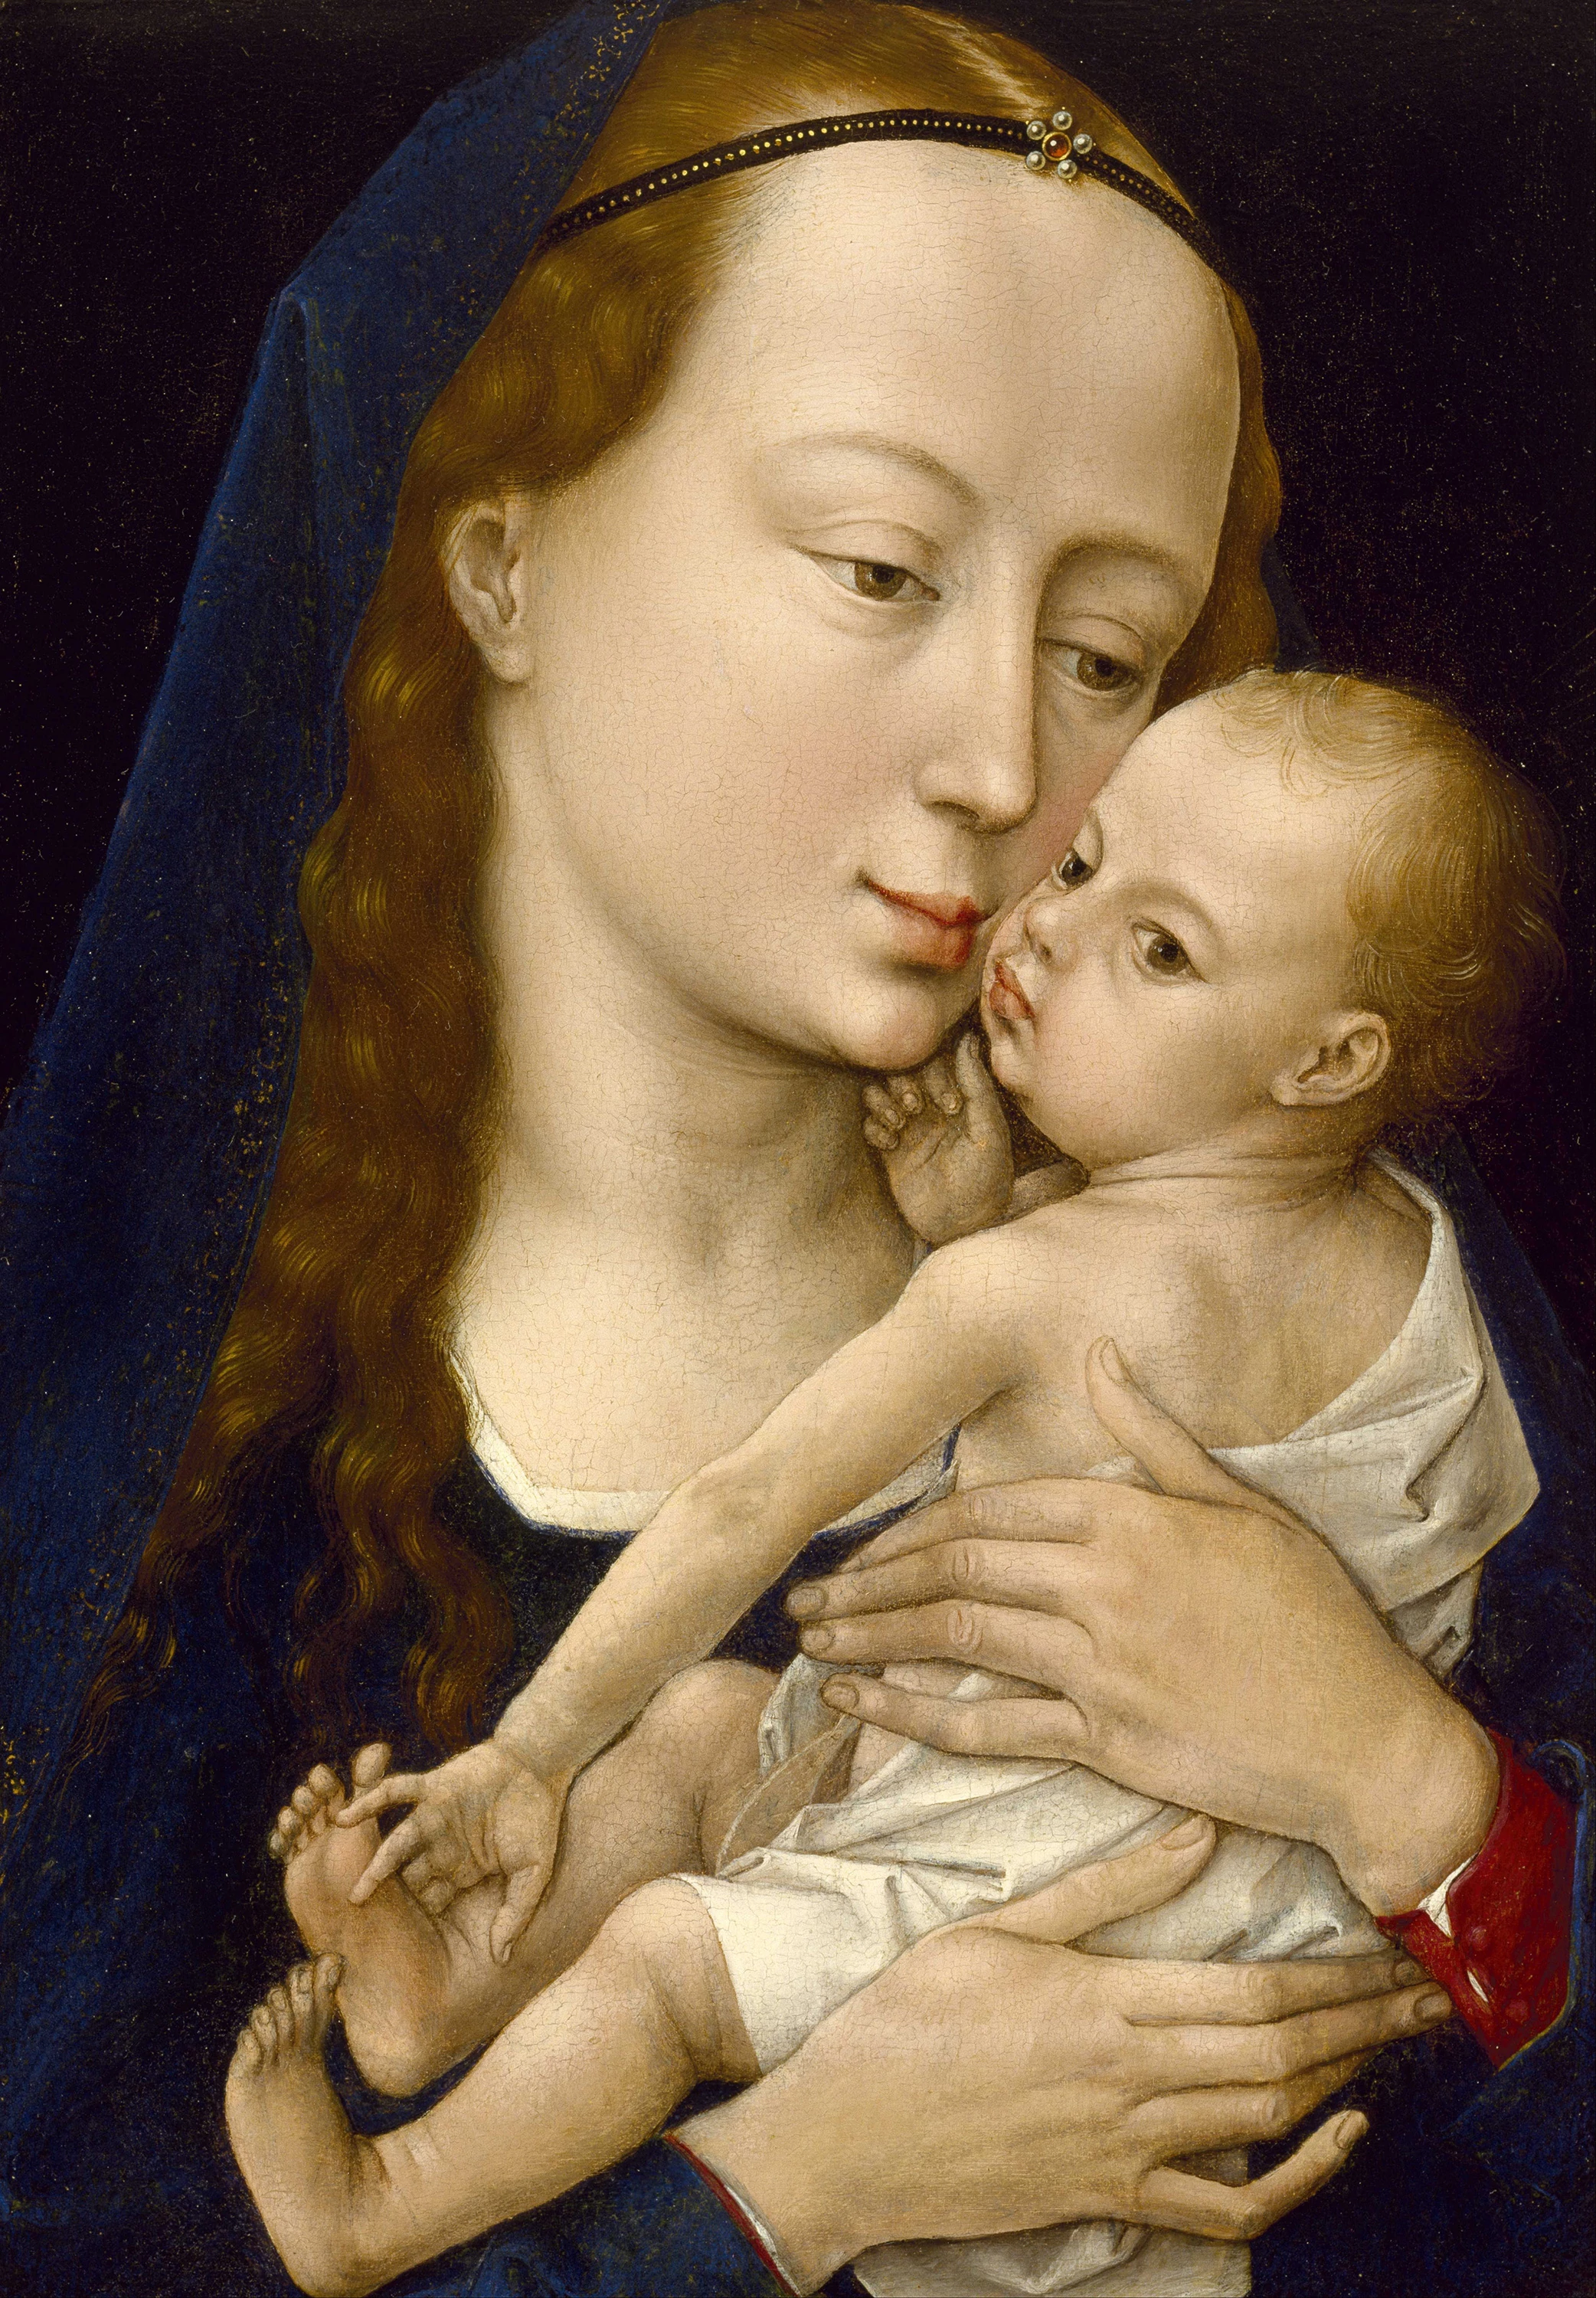 Virgin and Child, Rogier van der Weyden